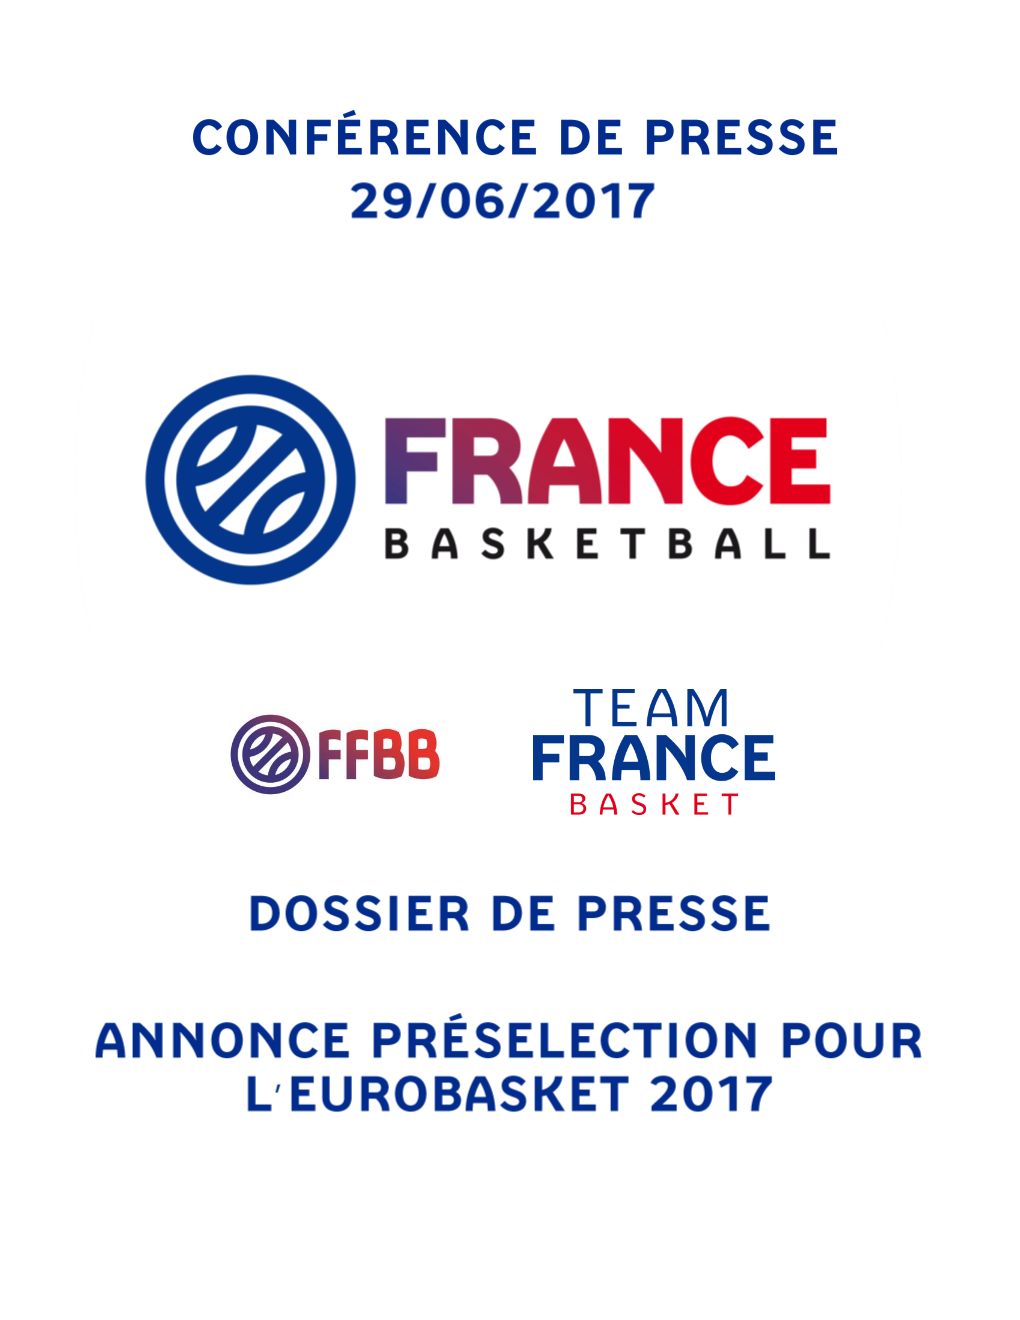 Liste 18 Joueurs Pour La Préparation De L'eurobasket 2017